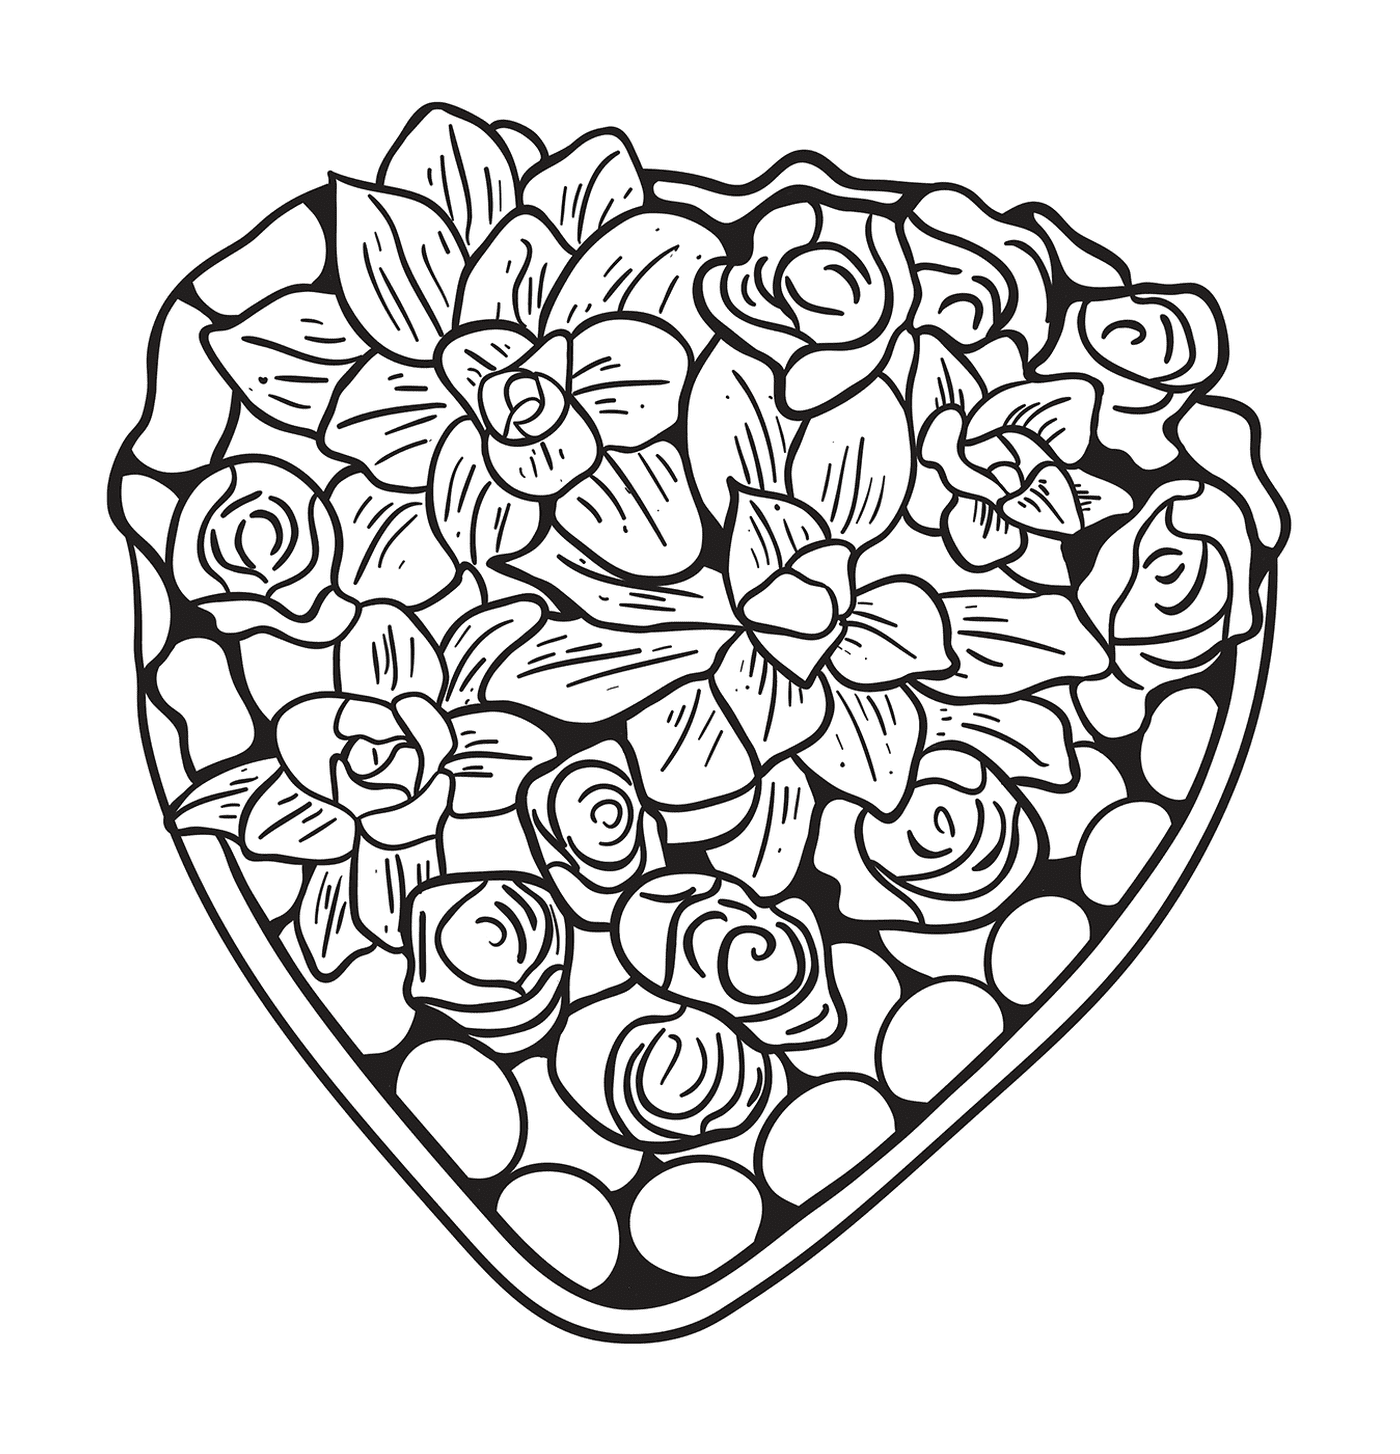  Bonito corazón compuesto de flores y rosas 